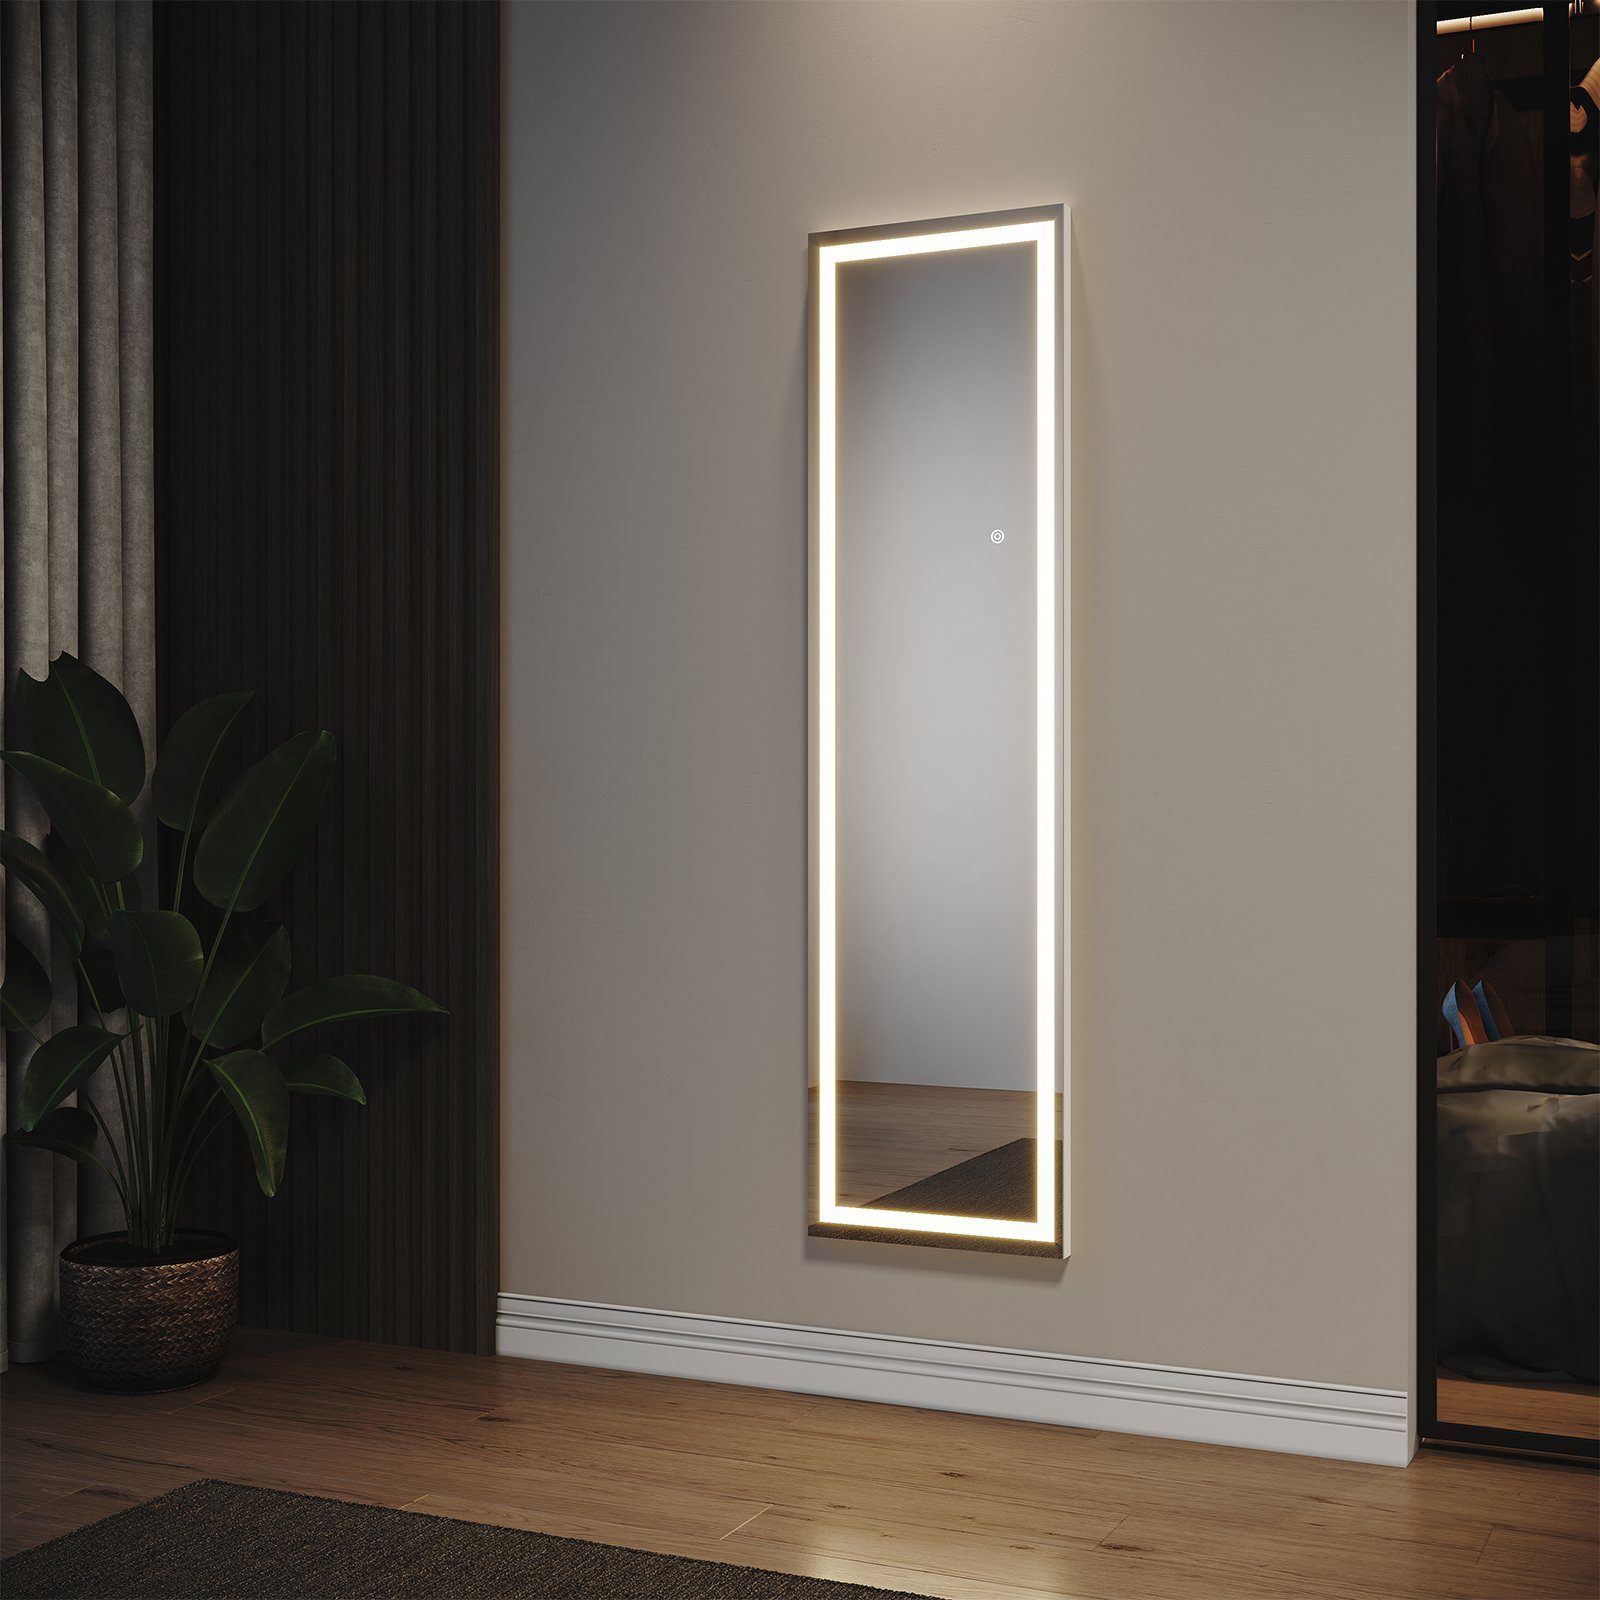 SONNI Ganzkörperspiegel »Wandspiegel mit LED Beleuchtung,in 3  Farben,BxH:400x1500mm, Modern« online kaufen | OTTO